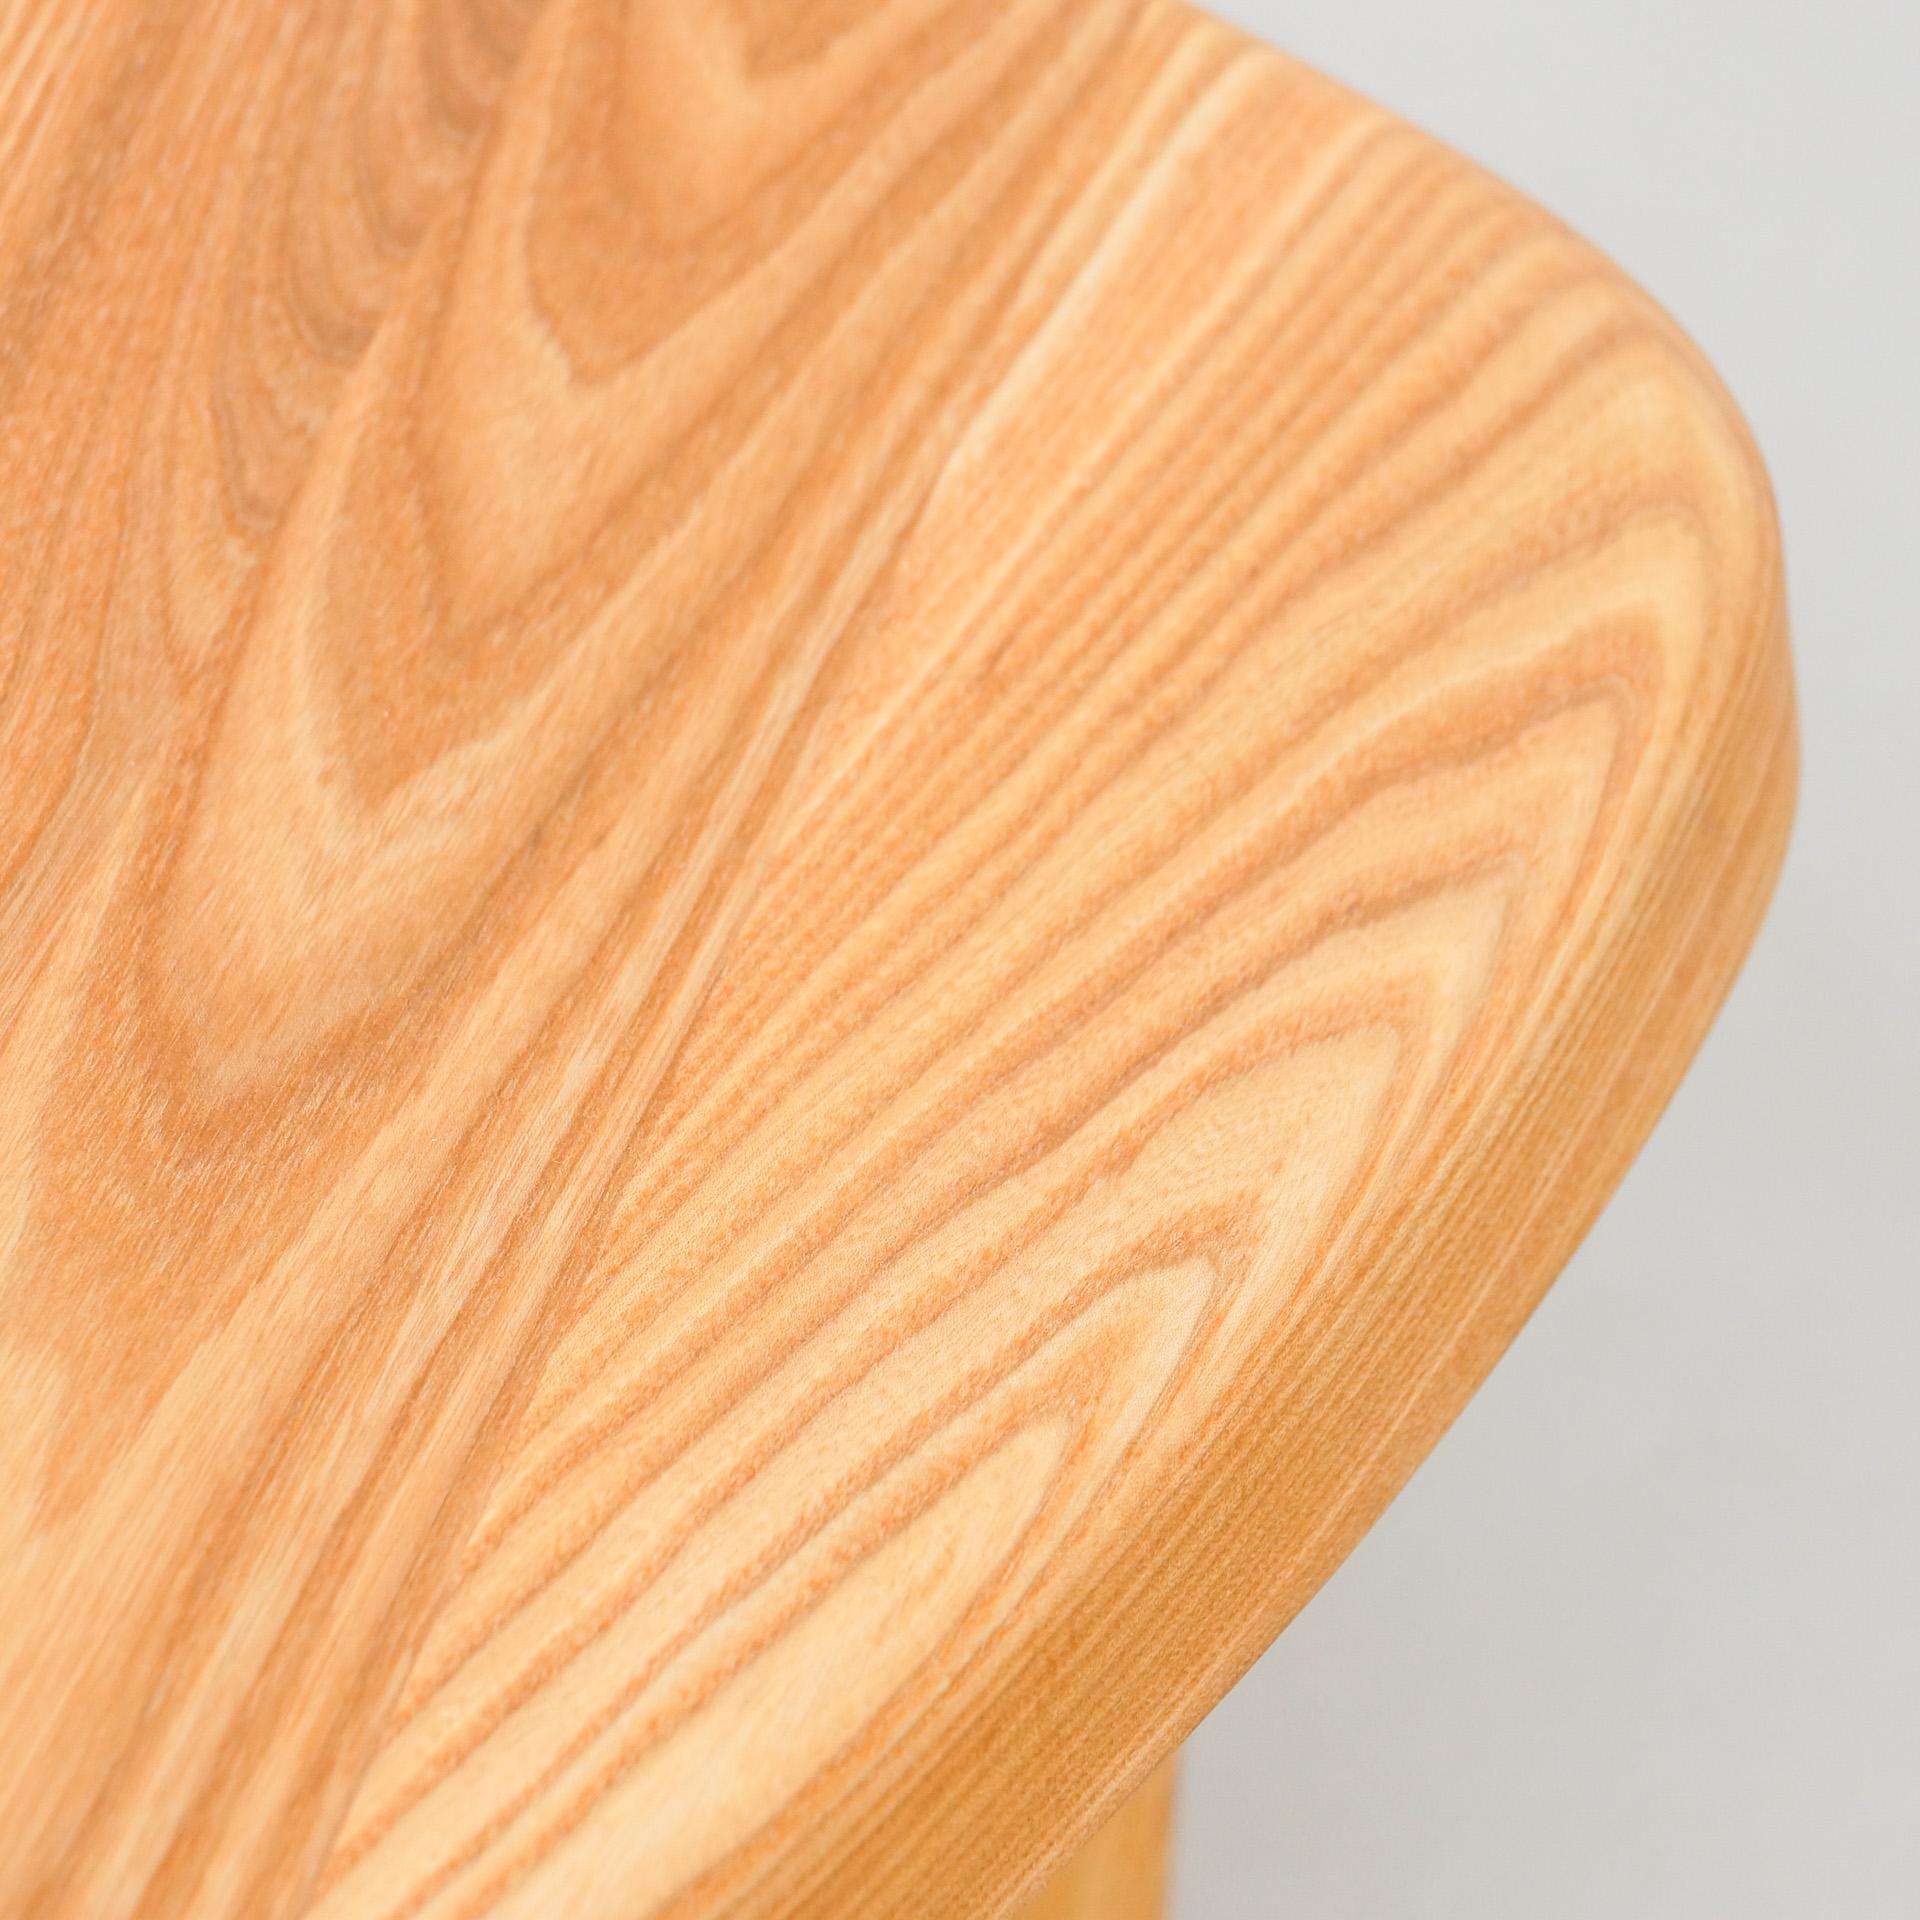 Pierre Chapo T23 Solid Elm Wood Formalist Side Table 7